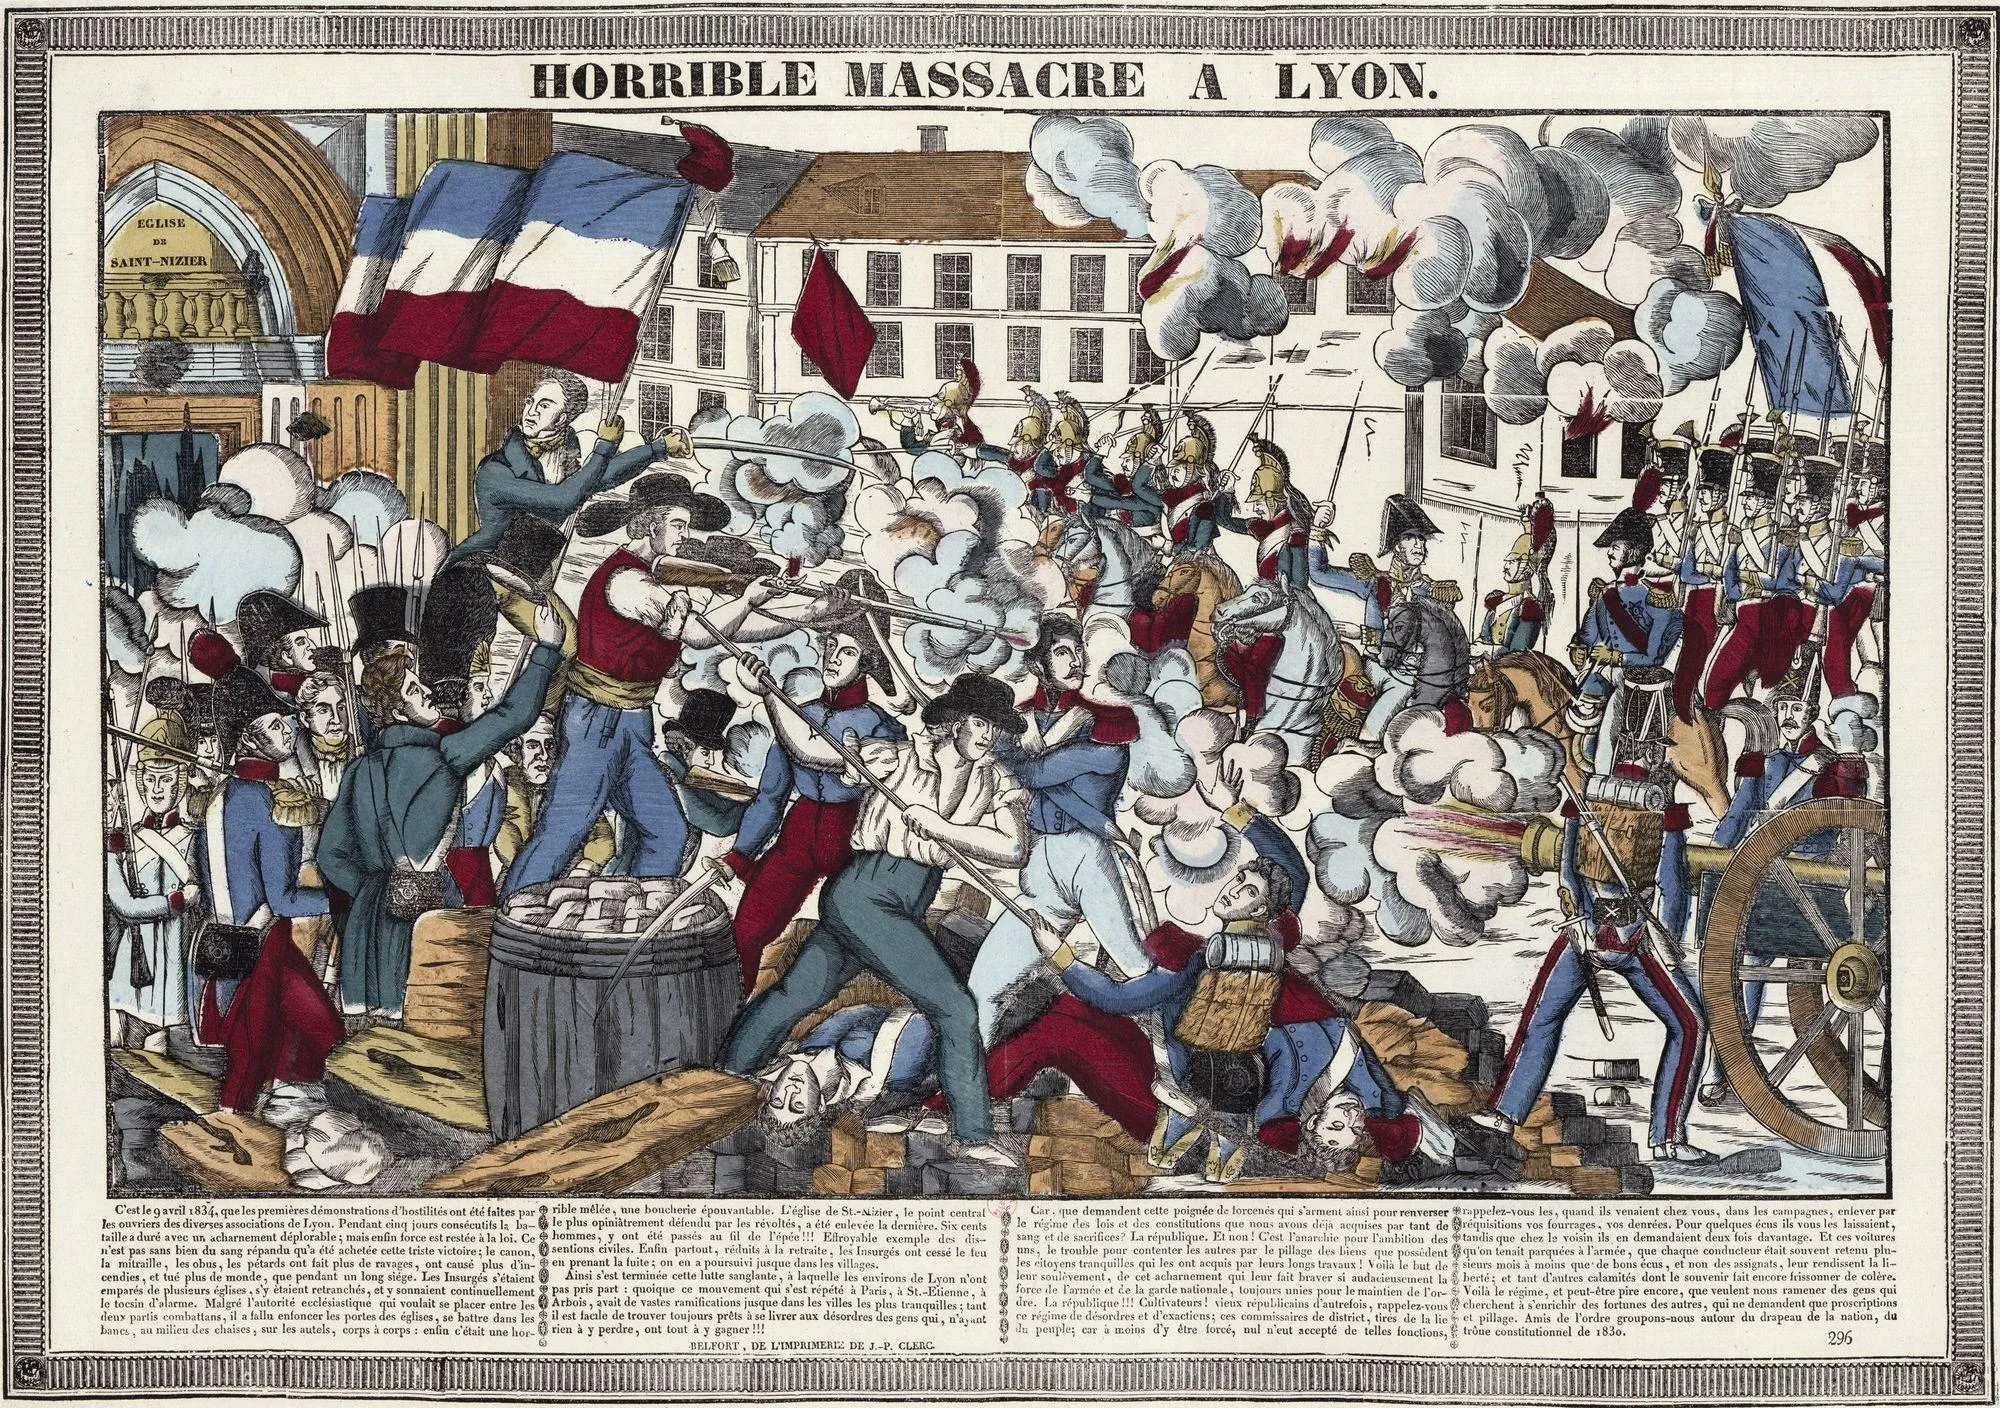 Anonyme, Horrible massacre à Lyon, 1834, estampe, 39,5 x 56,5 cm, BnF, Paris.